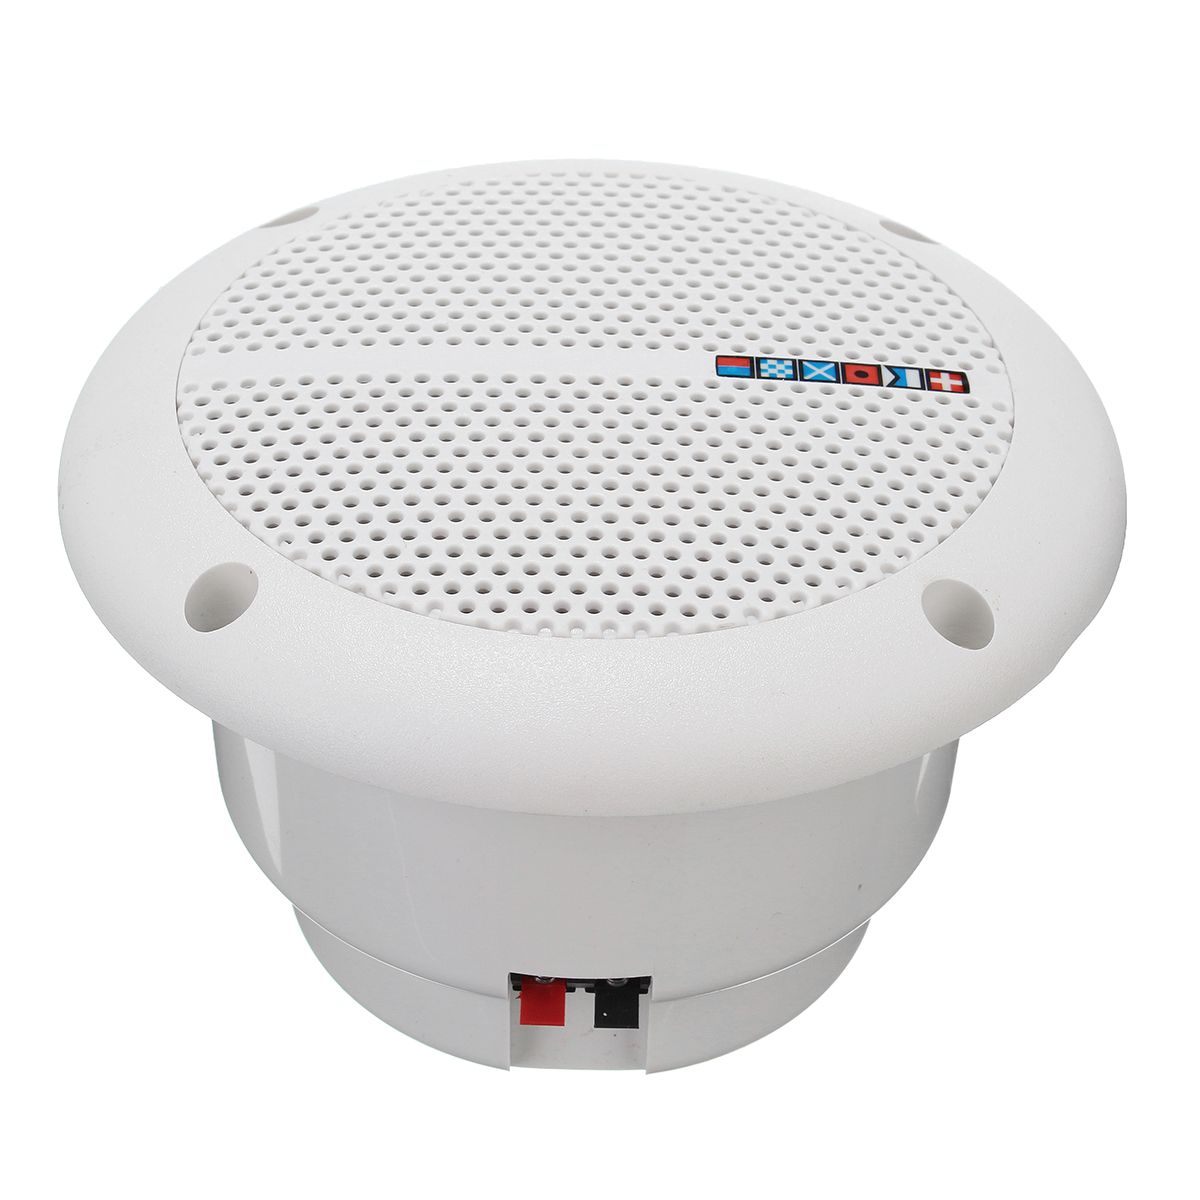 1-Pair-Waterproof-Marine-Boat-Ceiling-Speakers-Kitchen-Bathroom-Water-Resistant-1161657